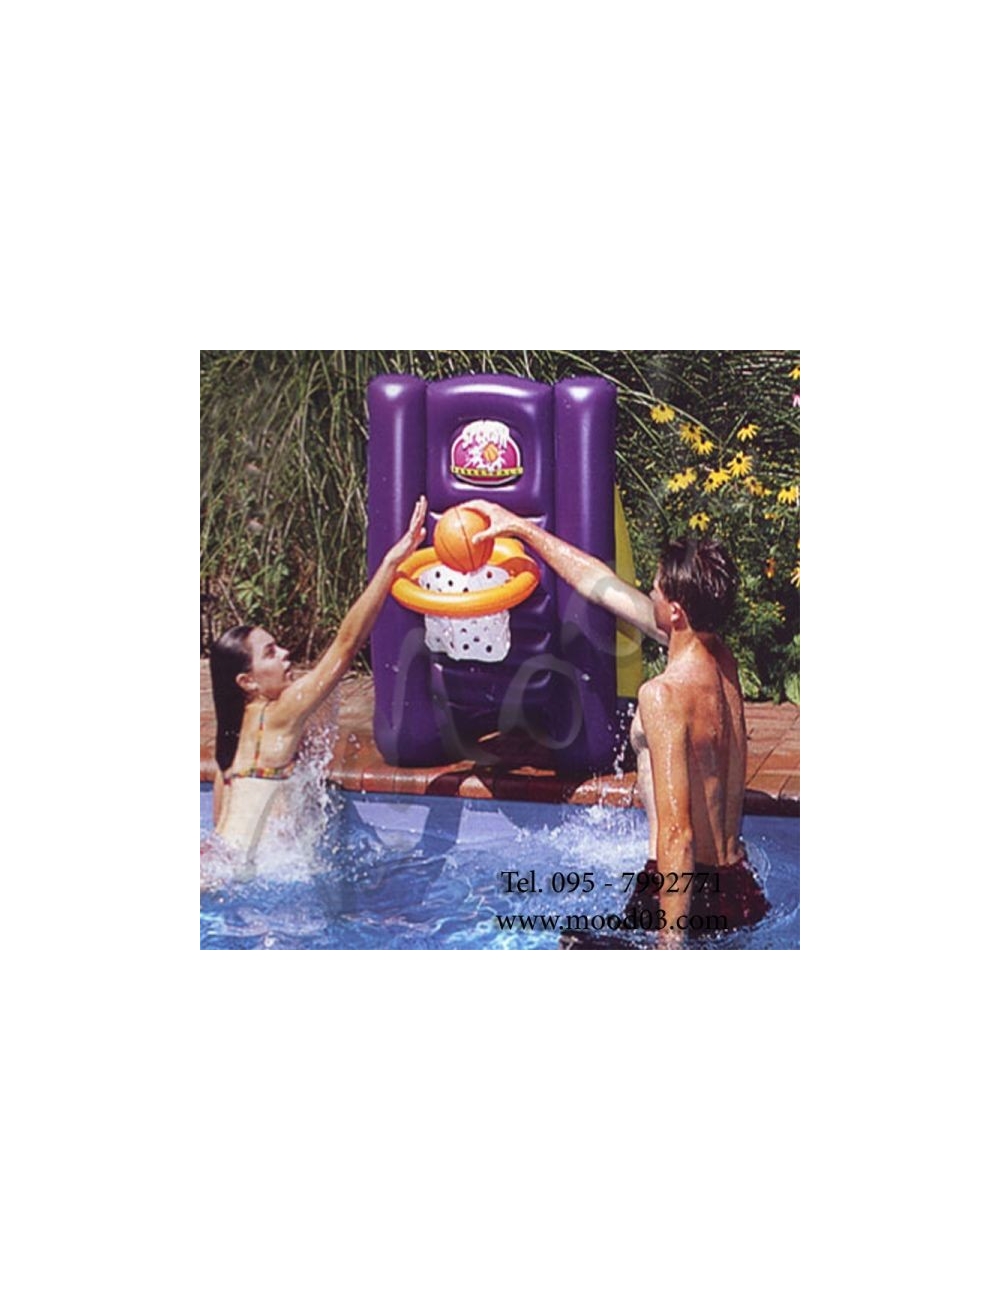 Swimline Splash Basketball - Gioco canestro gonfiabile con base riempibile, 2 palle incluse